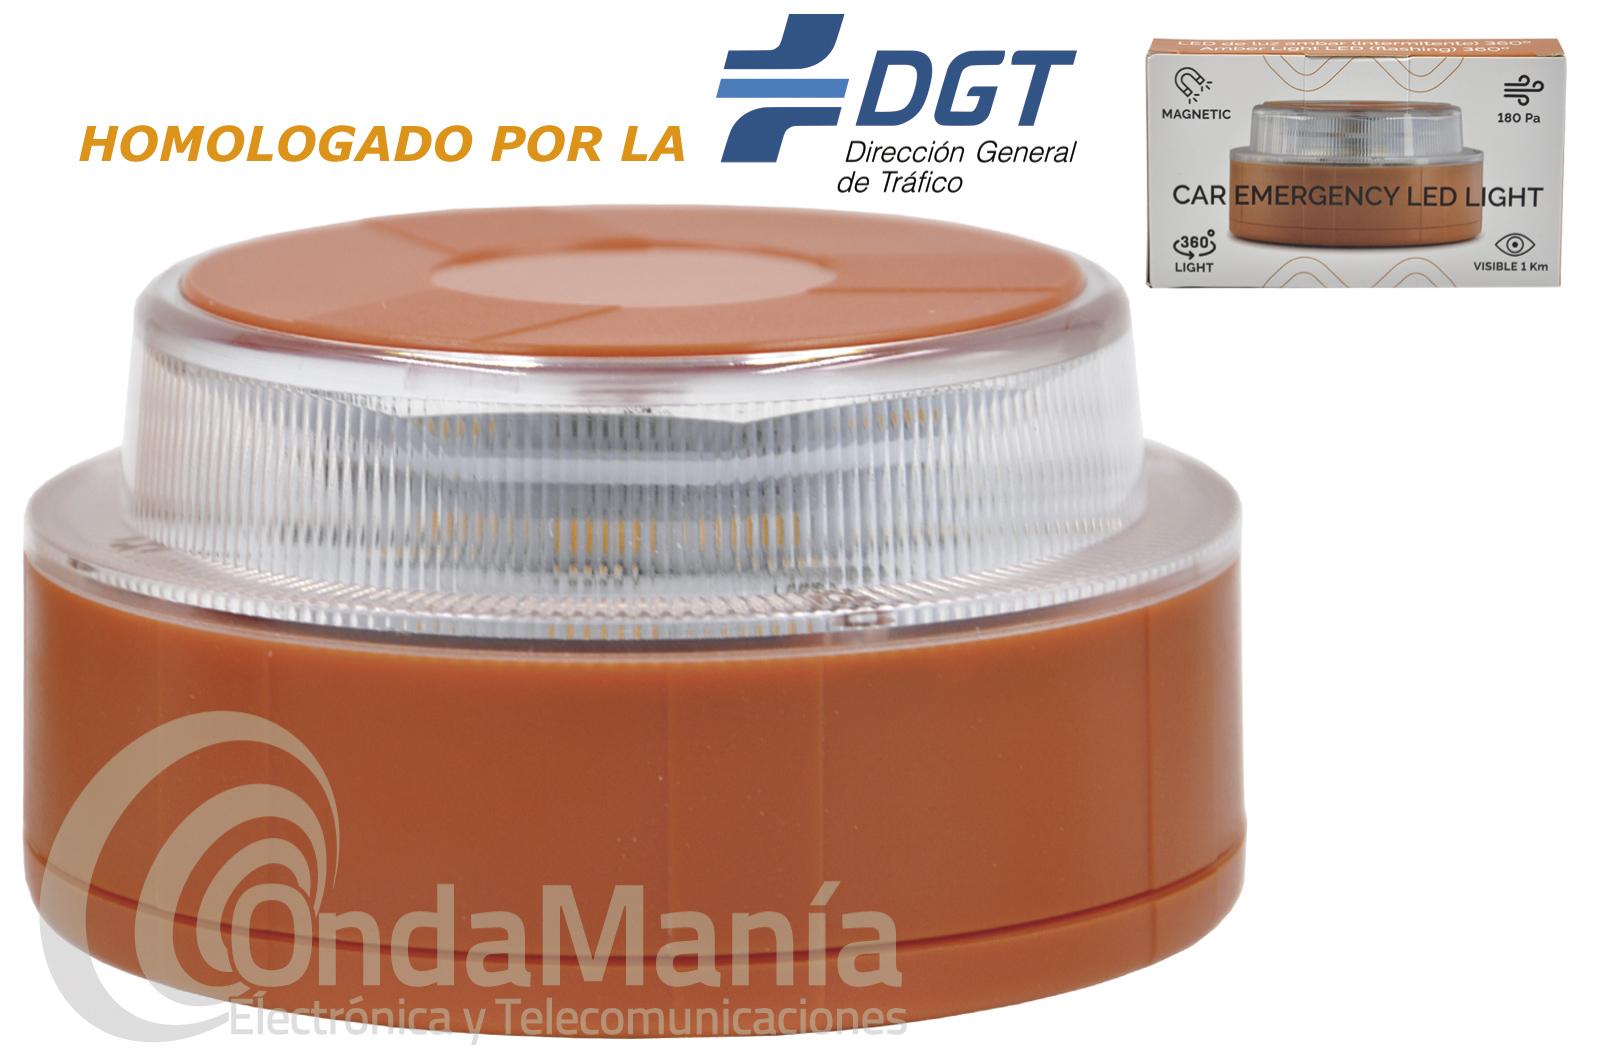 Contact Pack de 2 Luces de Emergencia con Placa Magnética V16 Homologada DGT